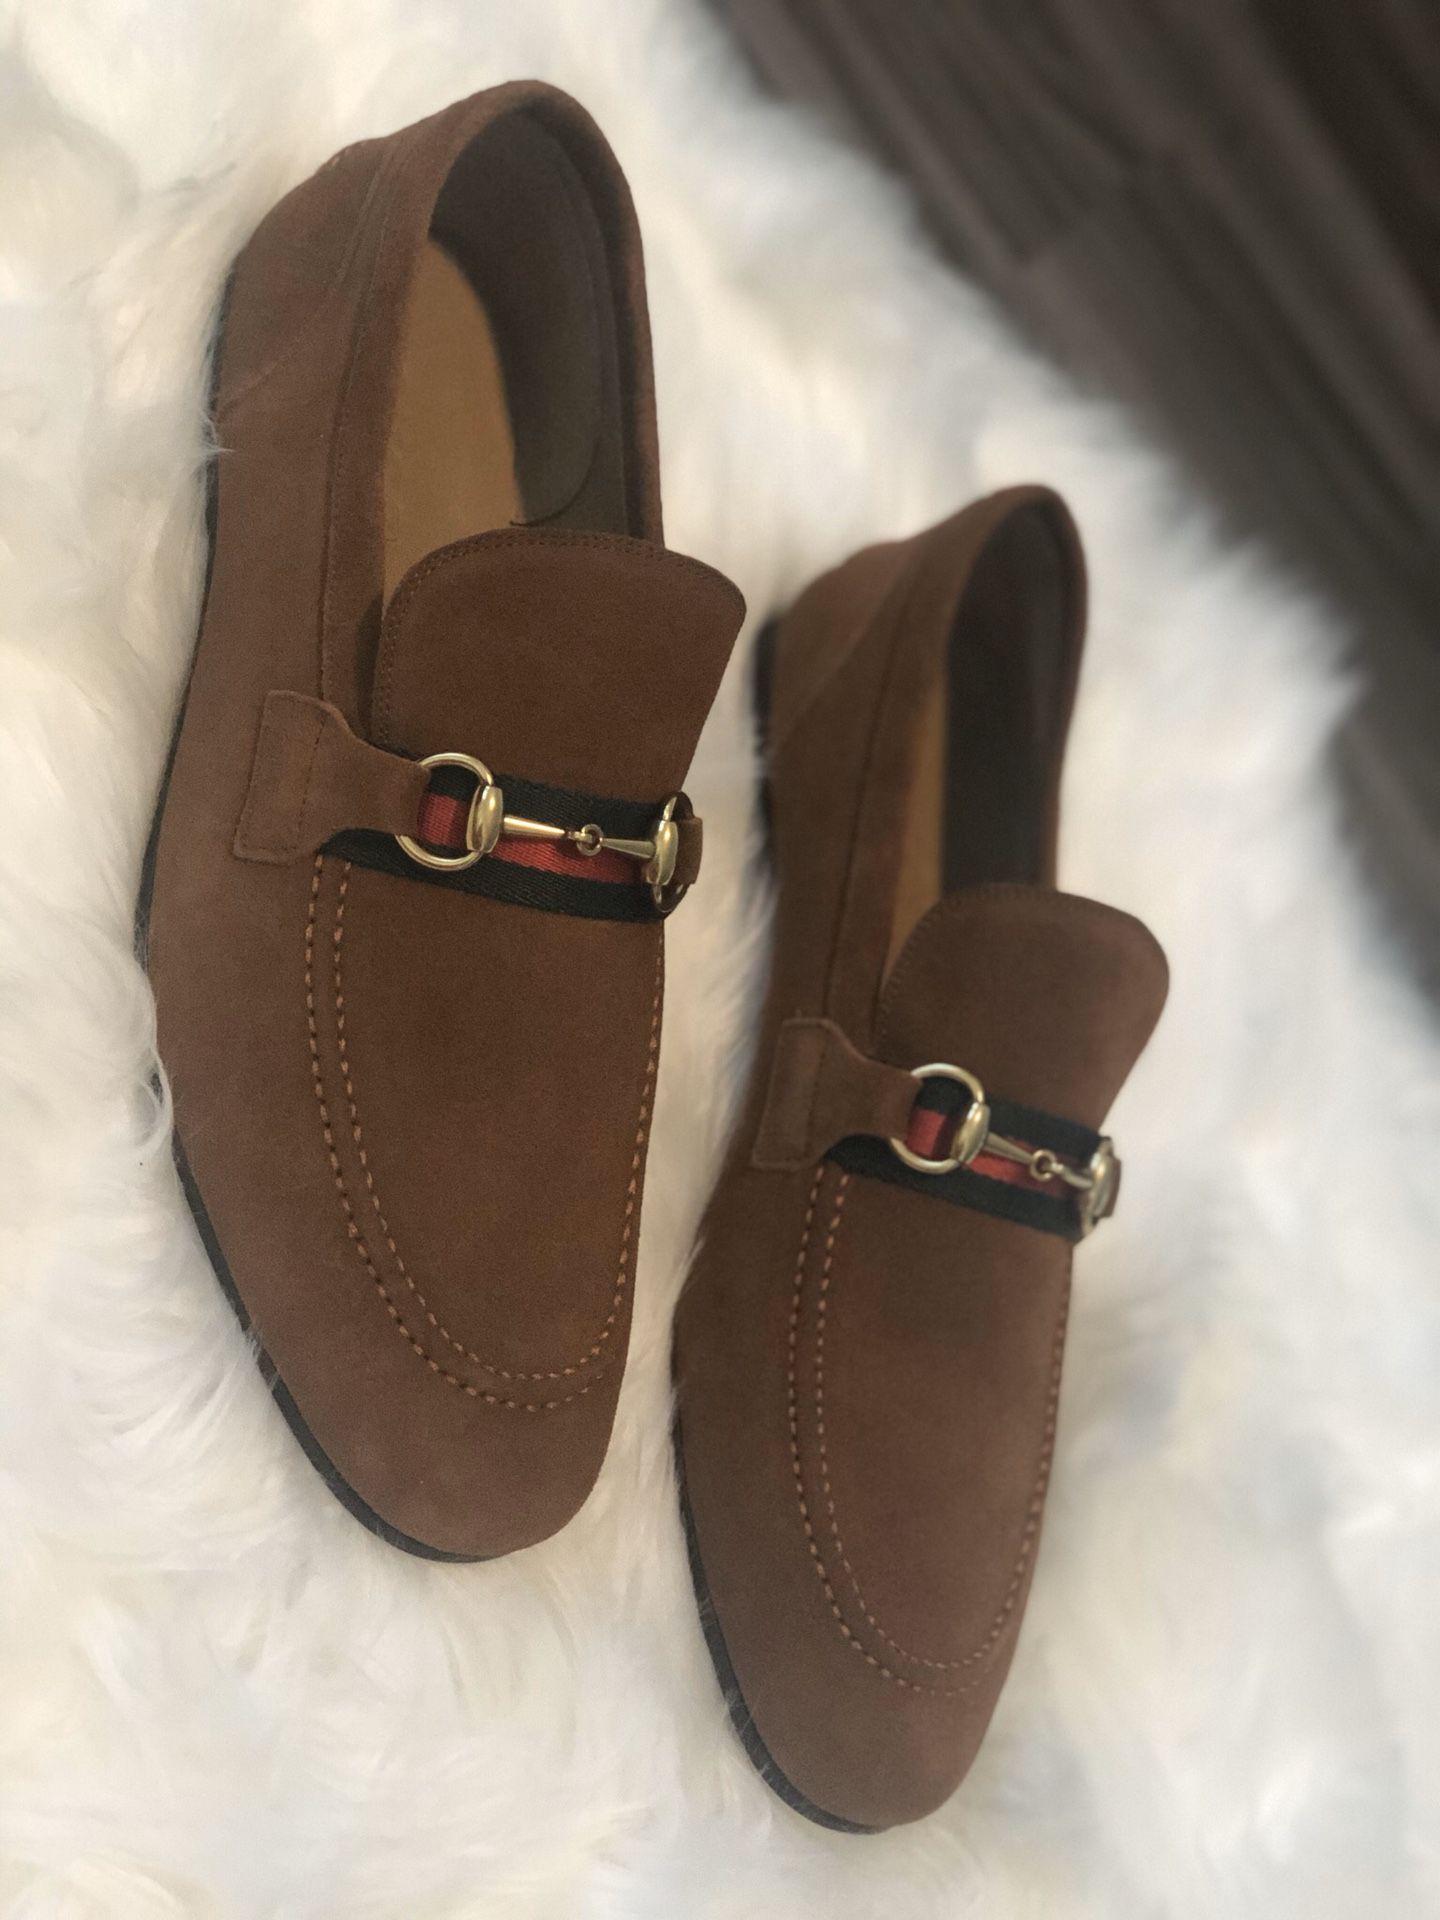 Men’s Gucci shoes